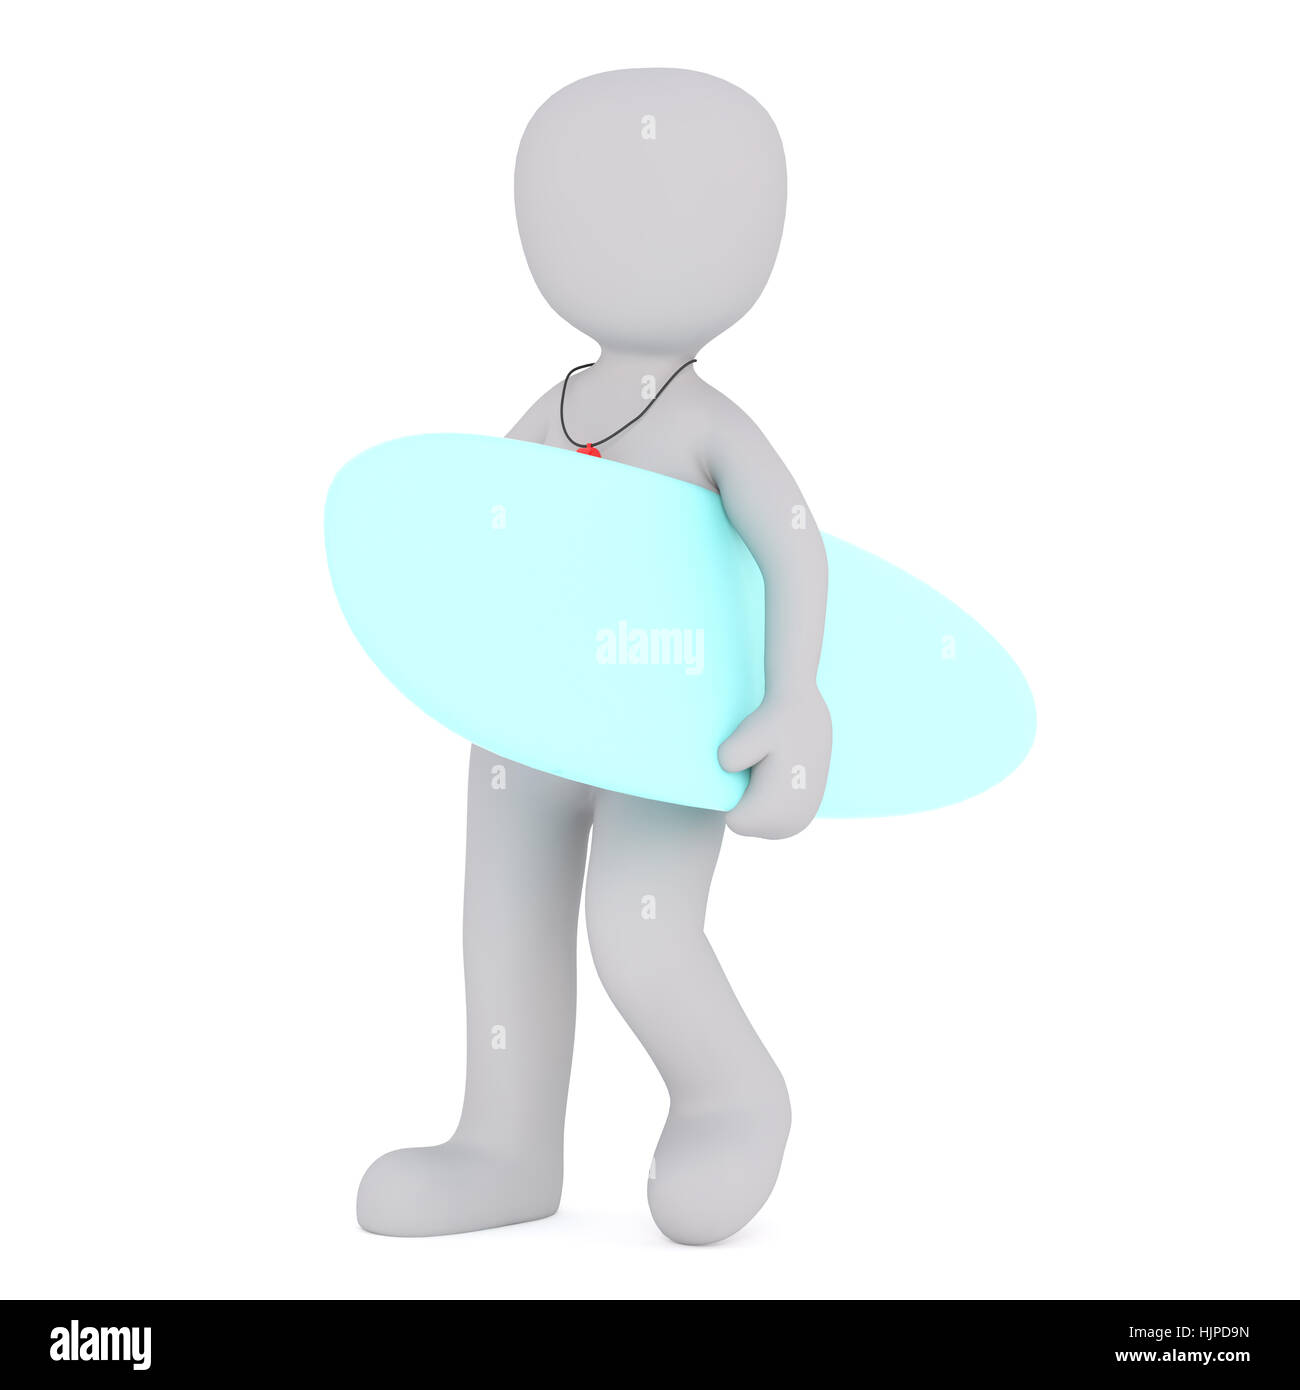 Grigio senza volto 3D uomo a camminare portando blue surf board in una mano, isolato su sfondo bianco Foto Stock